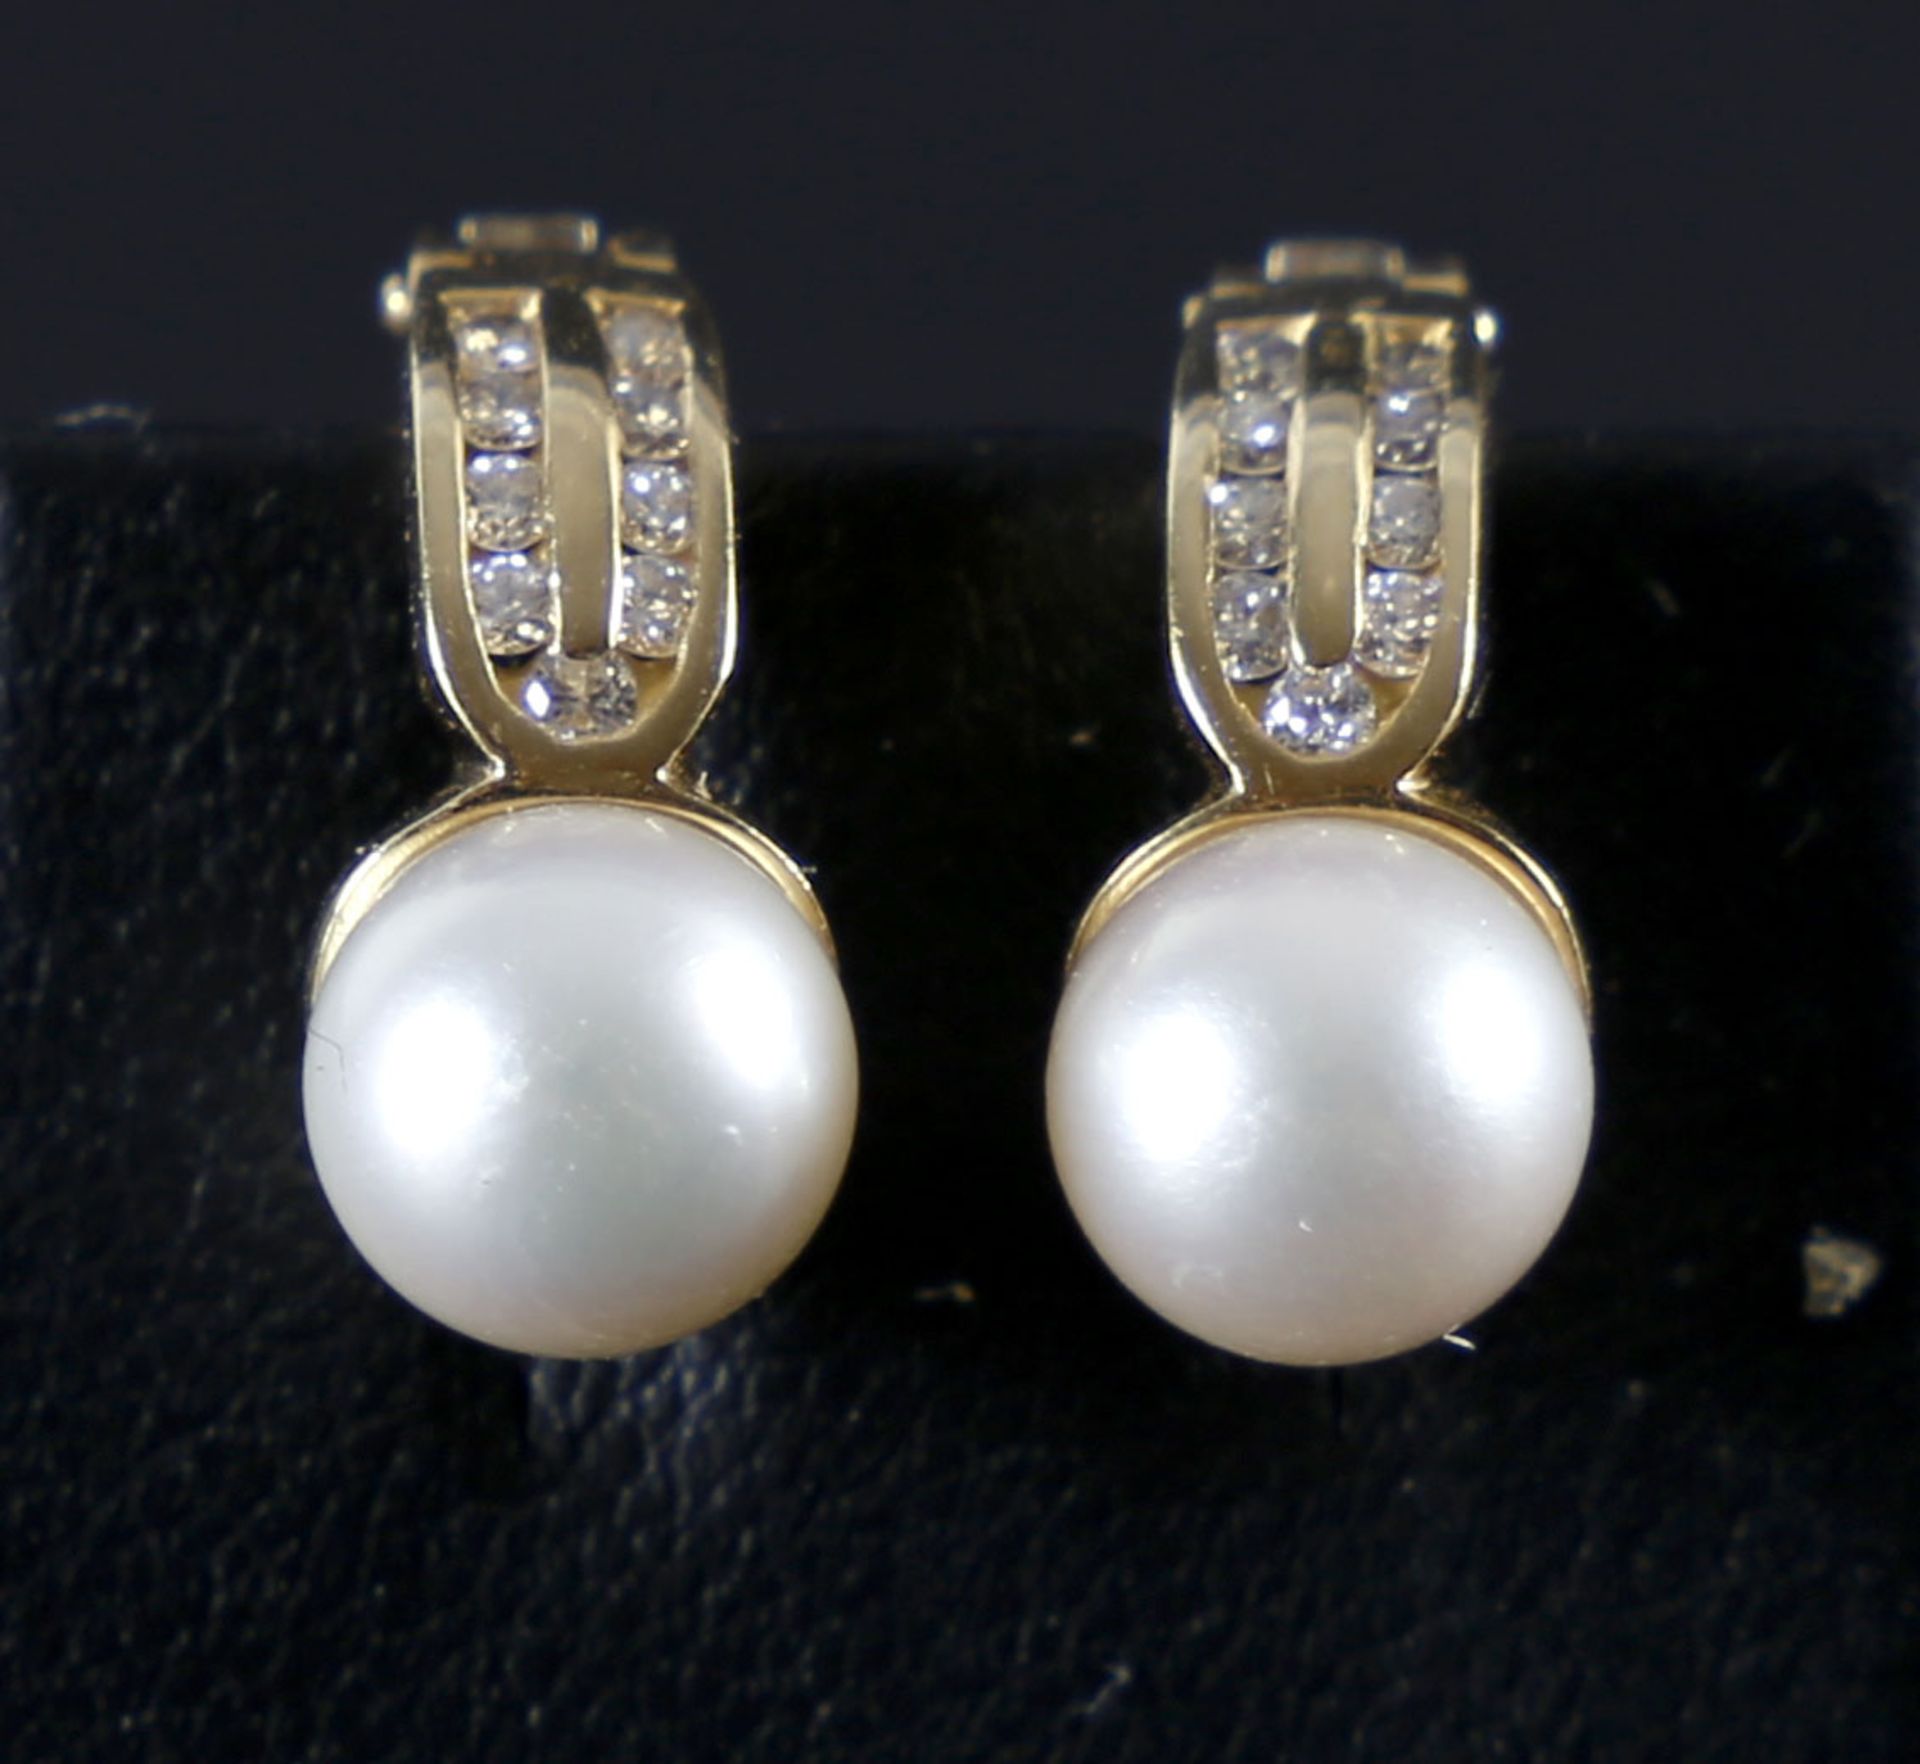 Wunderschönes Paar Ohrstecker mit Perle und Brillanten, 750er GG